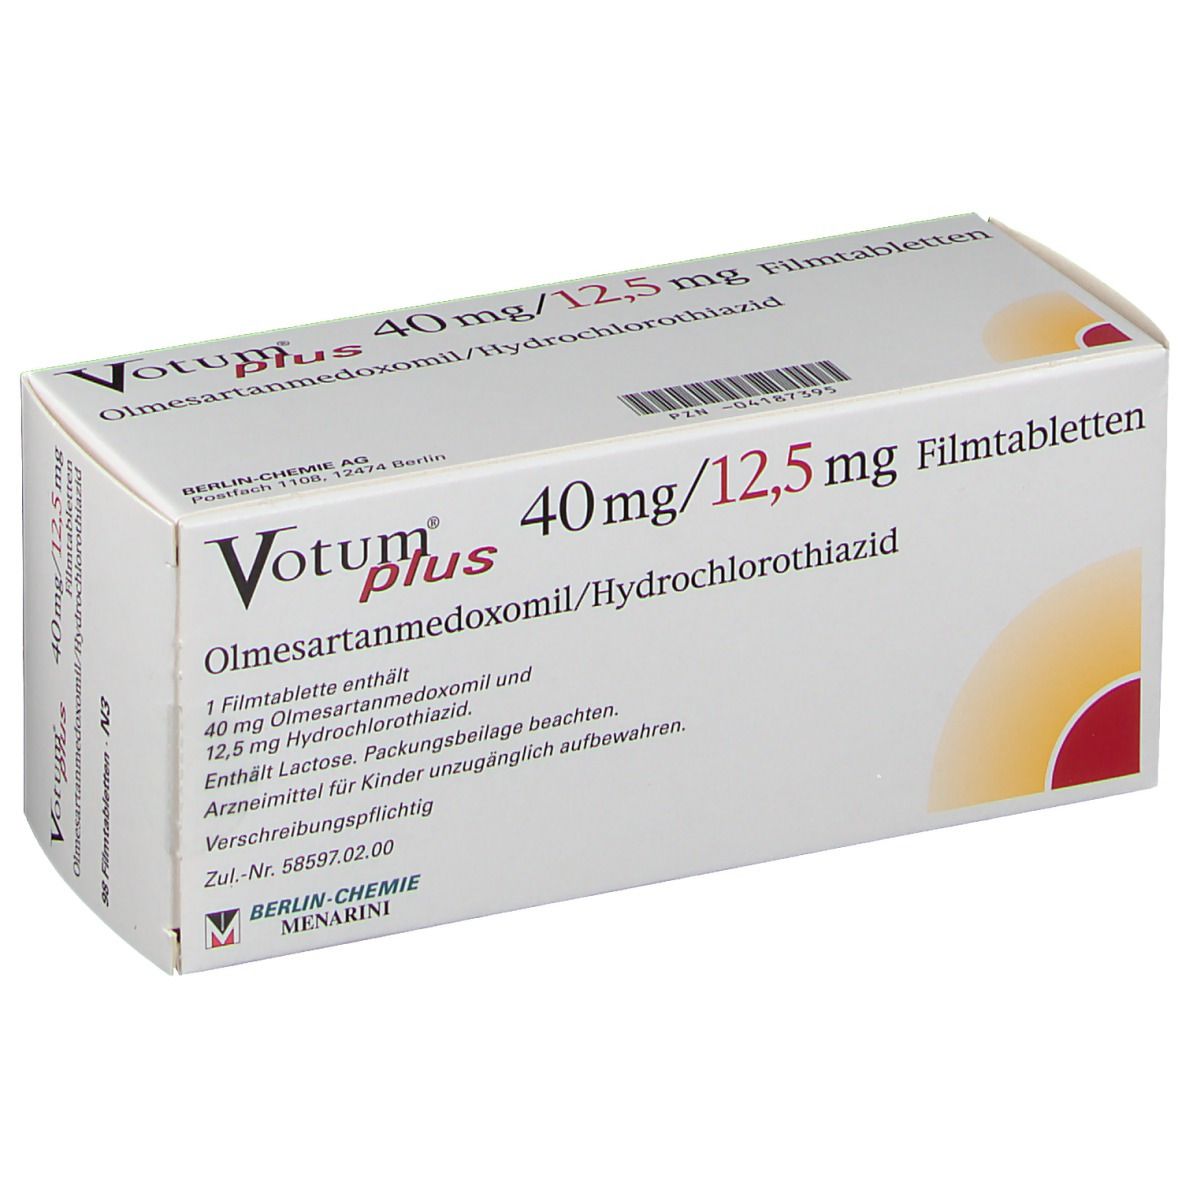 Votum® Plus 40 mg/12,5 mg